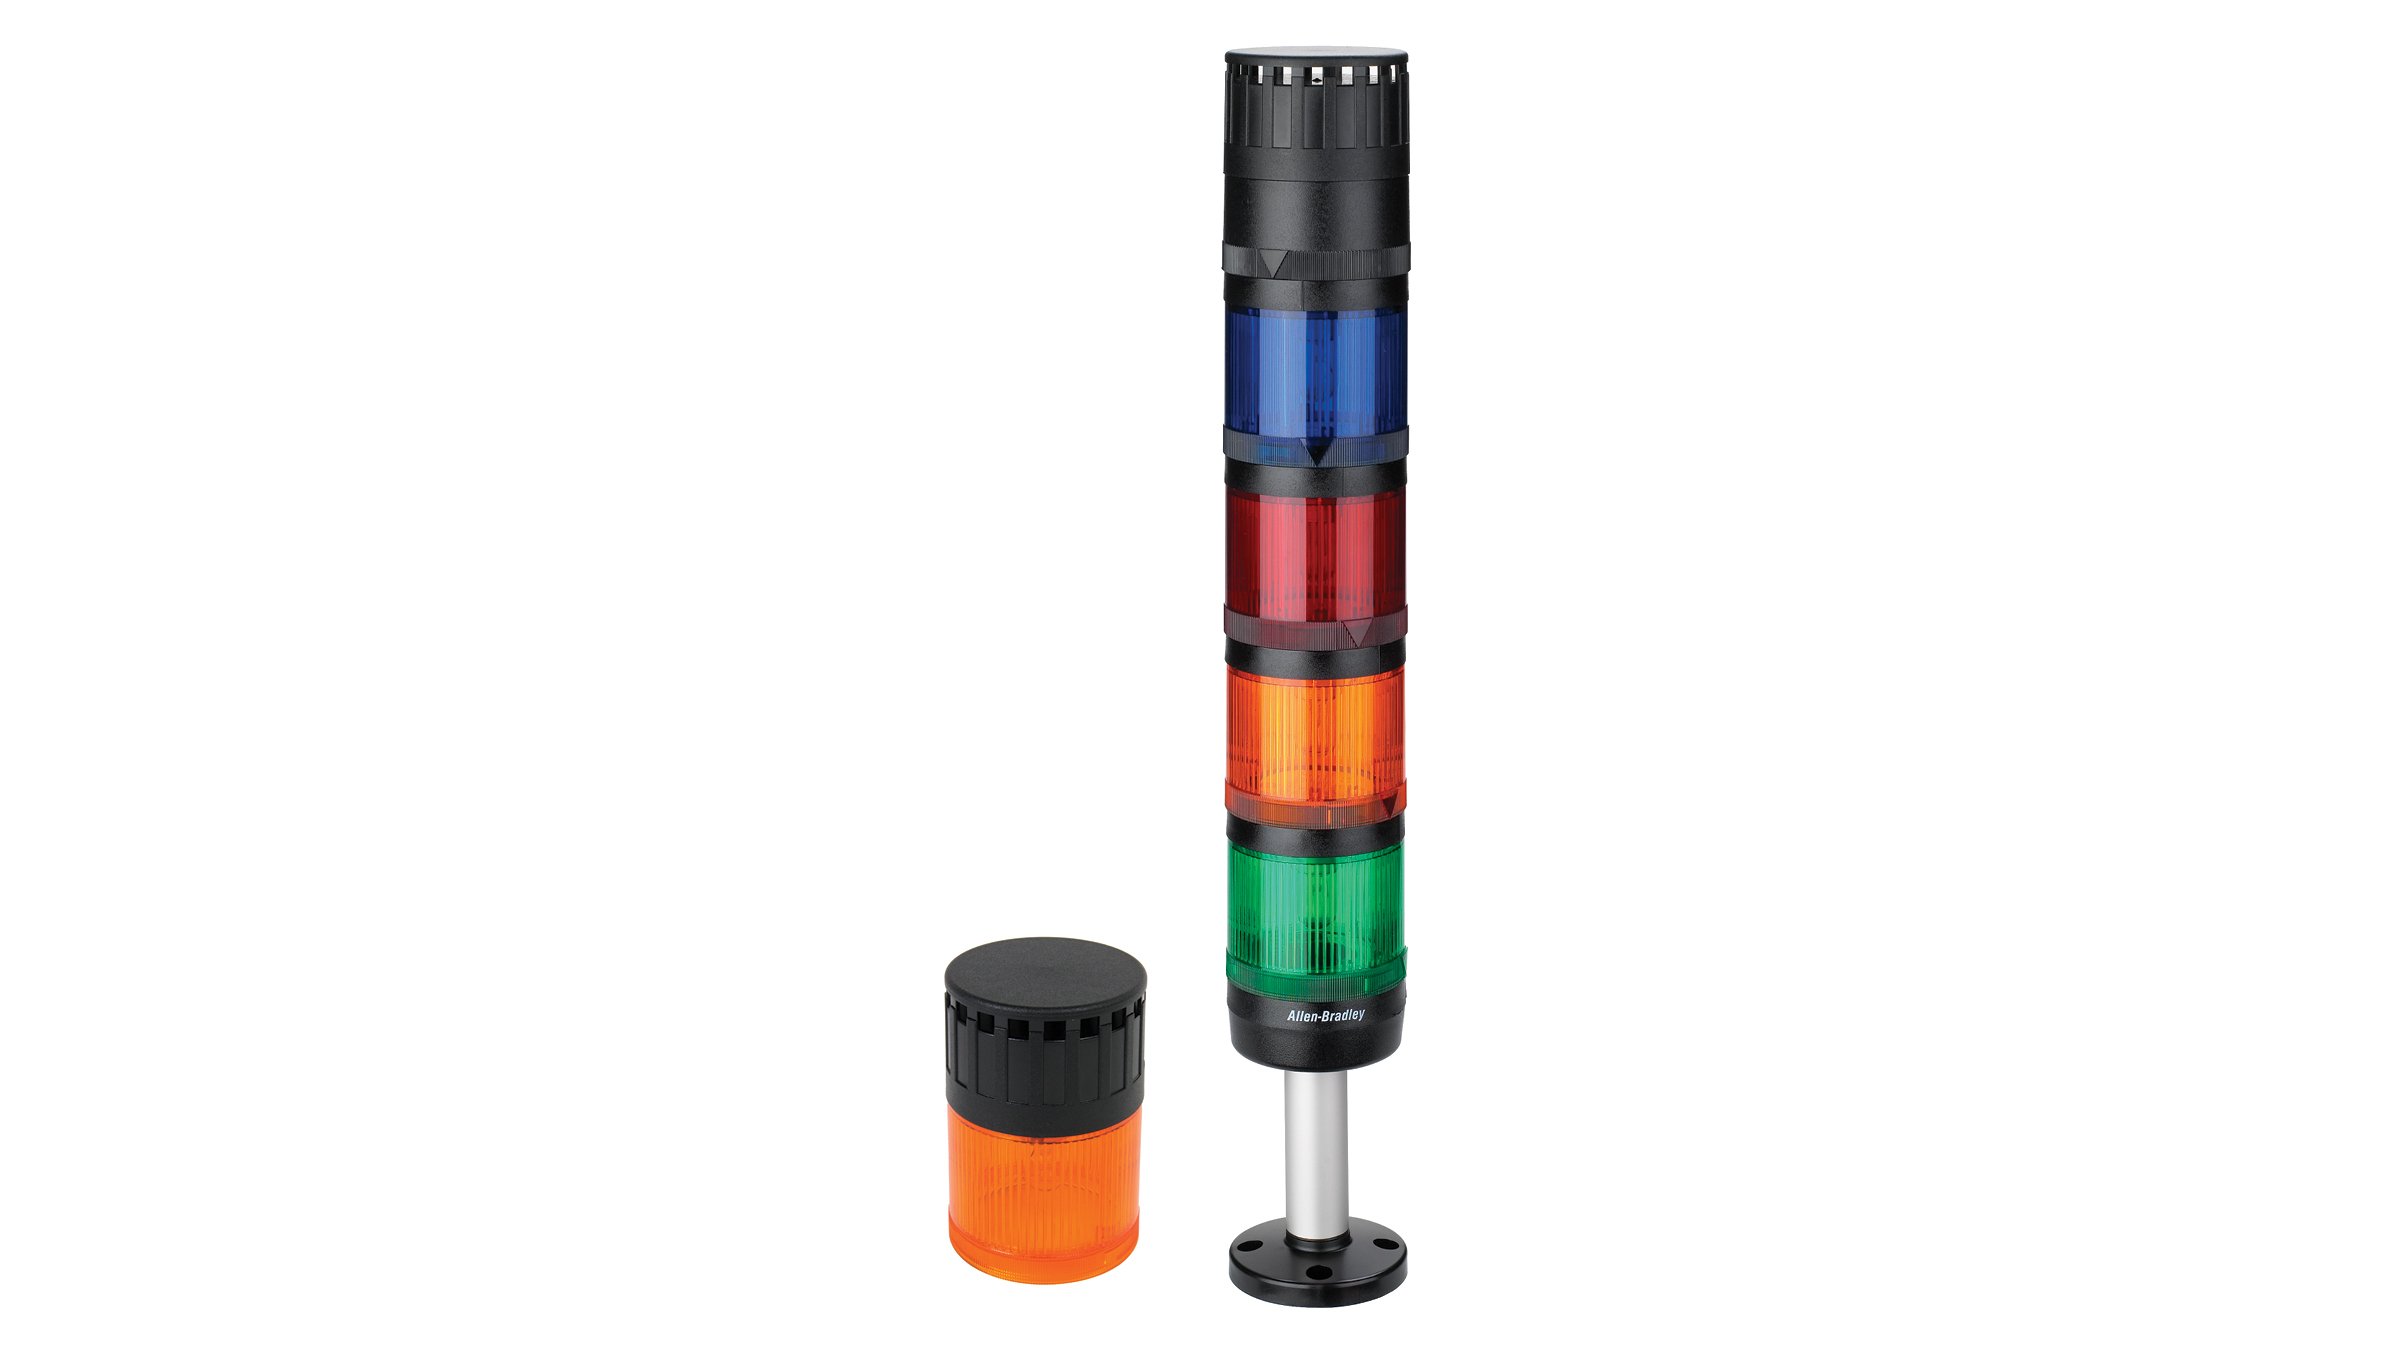 2つの855 Control Towerスタックライト、上部が黒色の単一オレンジのライト、上部が黒色の緑、オレンジ、赤、青の4つのスタックライトの台座